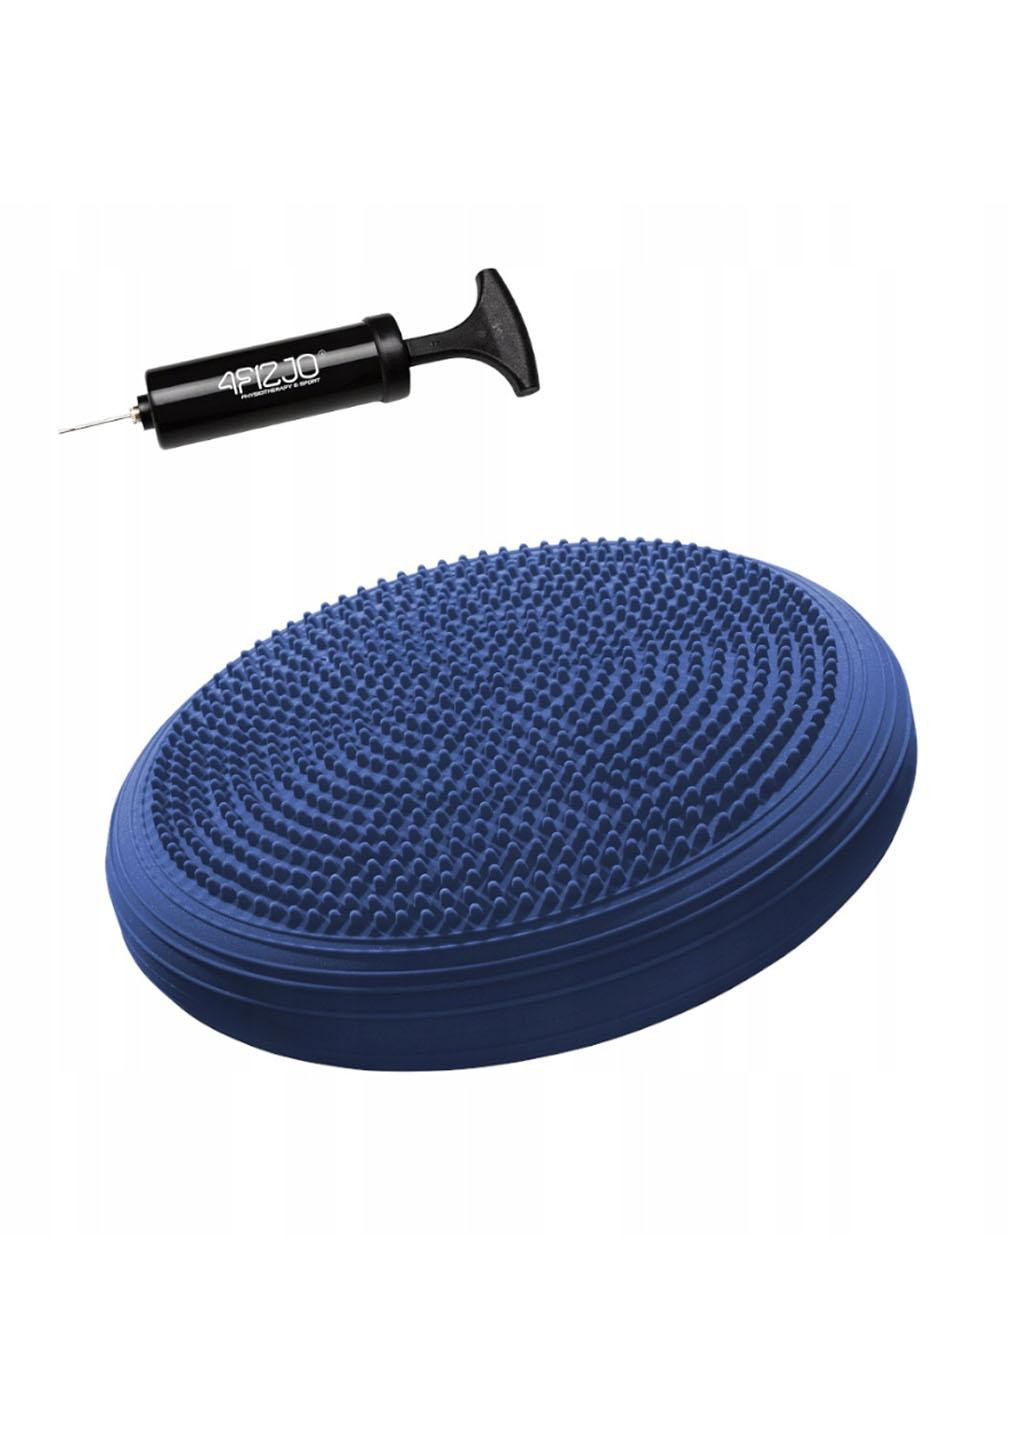 Балансировочная подушка-диск MED+ 33 см (сенсомоторная) массажная 4FJ0319 Blue 4FIZJO (258354818)